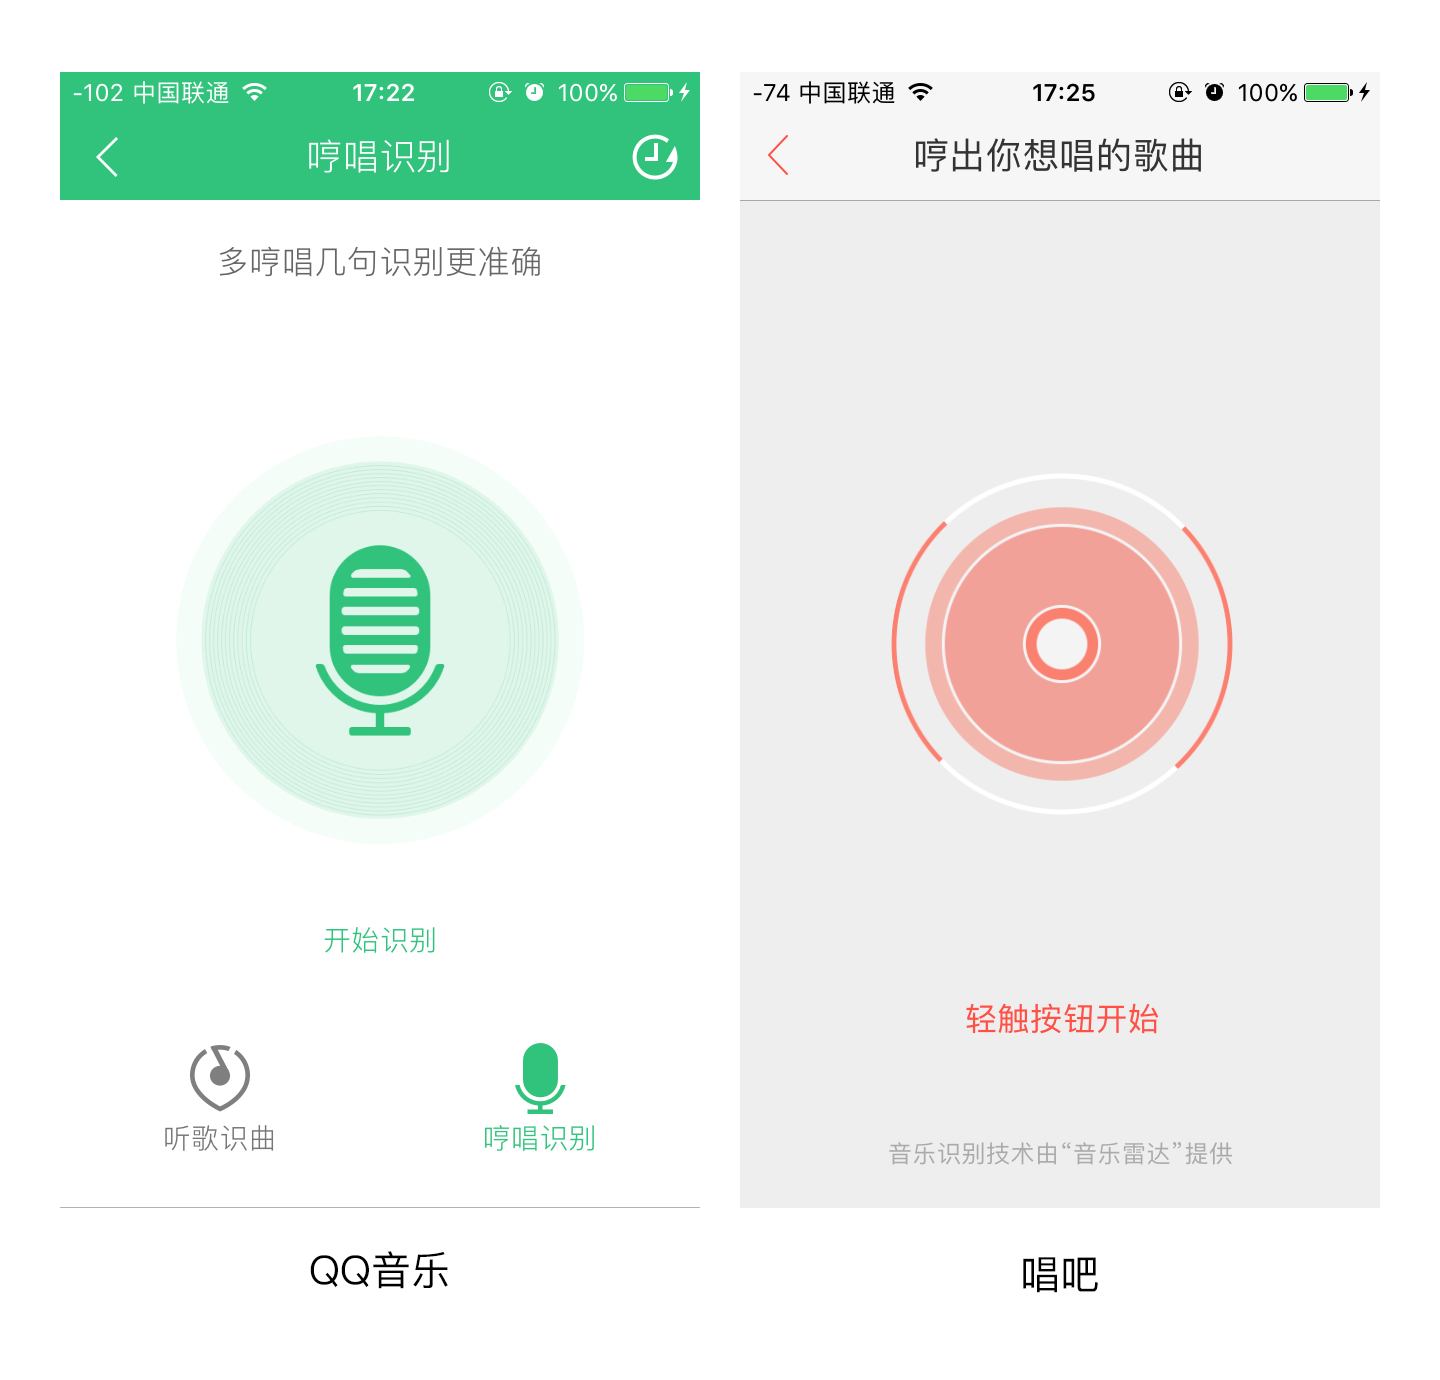 手机图片搜索来源app免费下载-Search By Image(图片搜索编辑器软件app)1.0.0 中文免费版-5G资源网